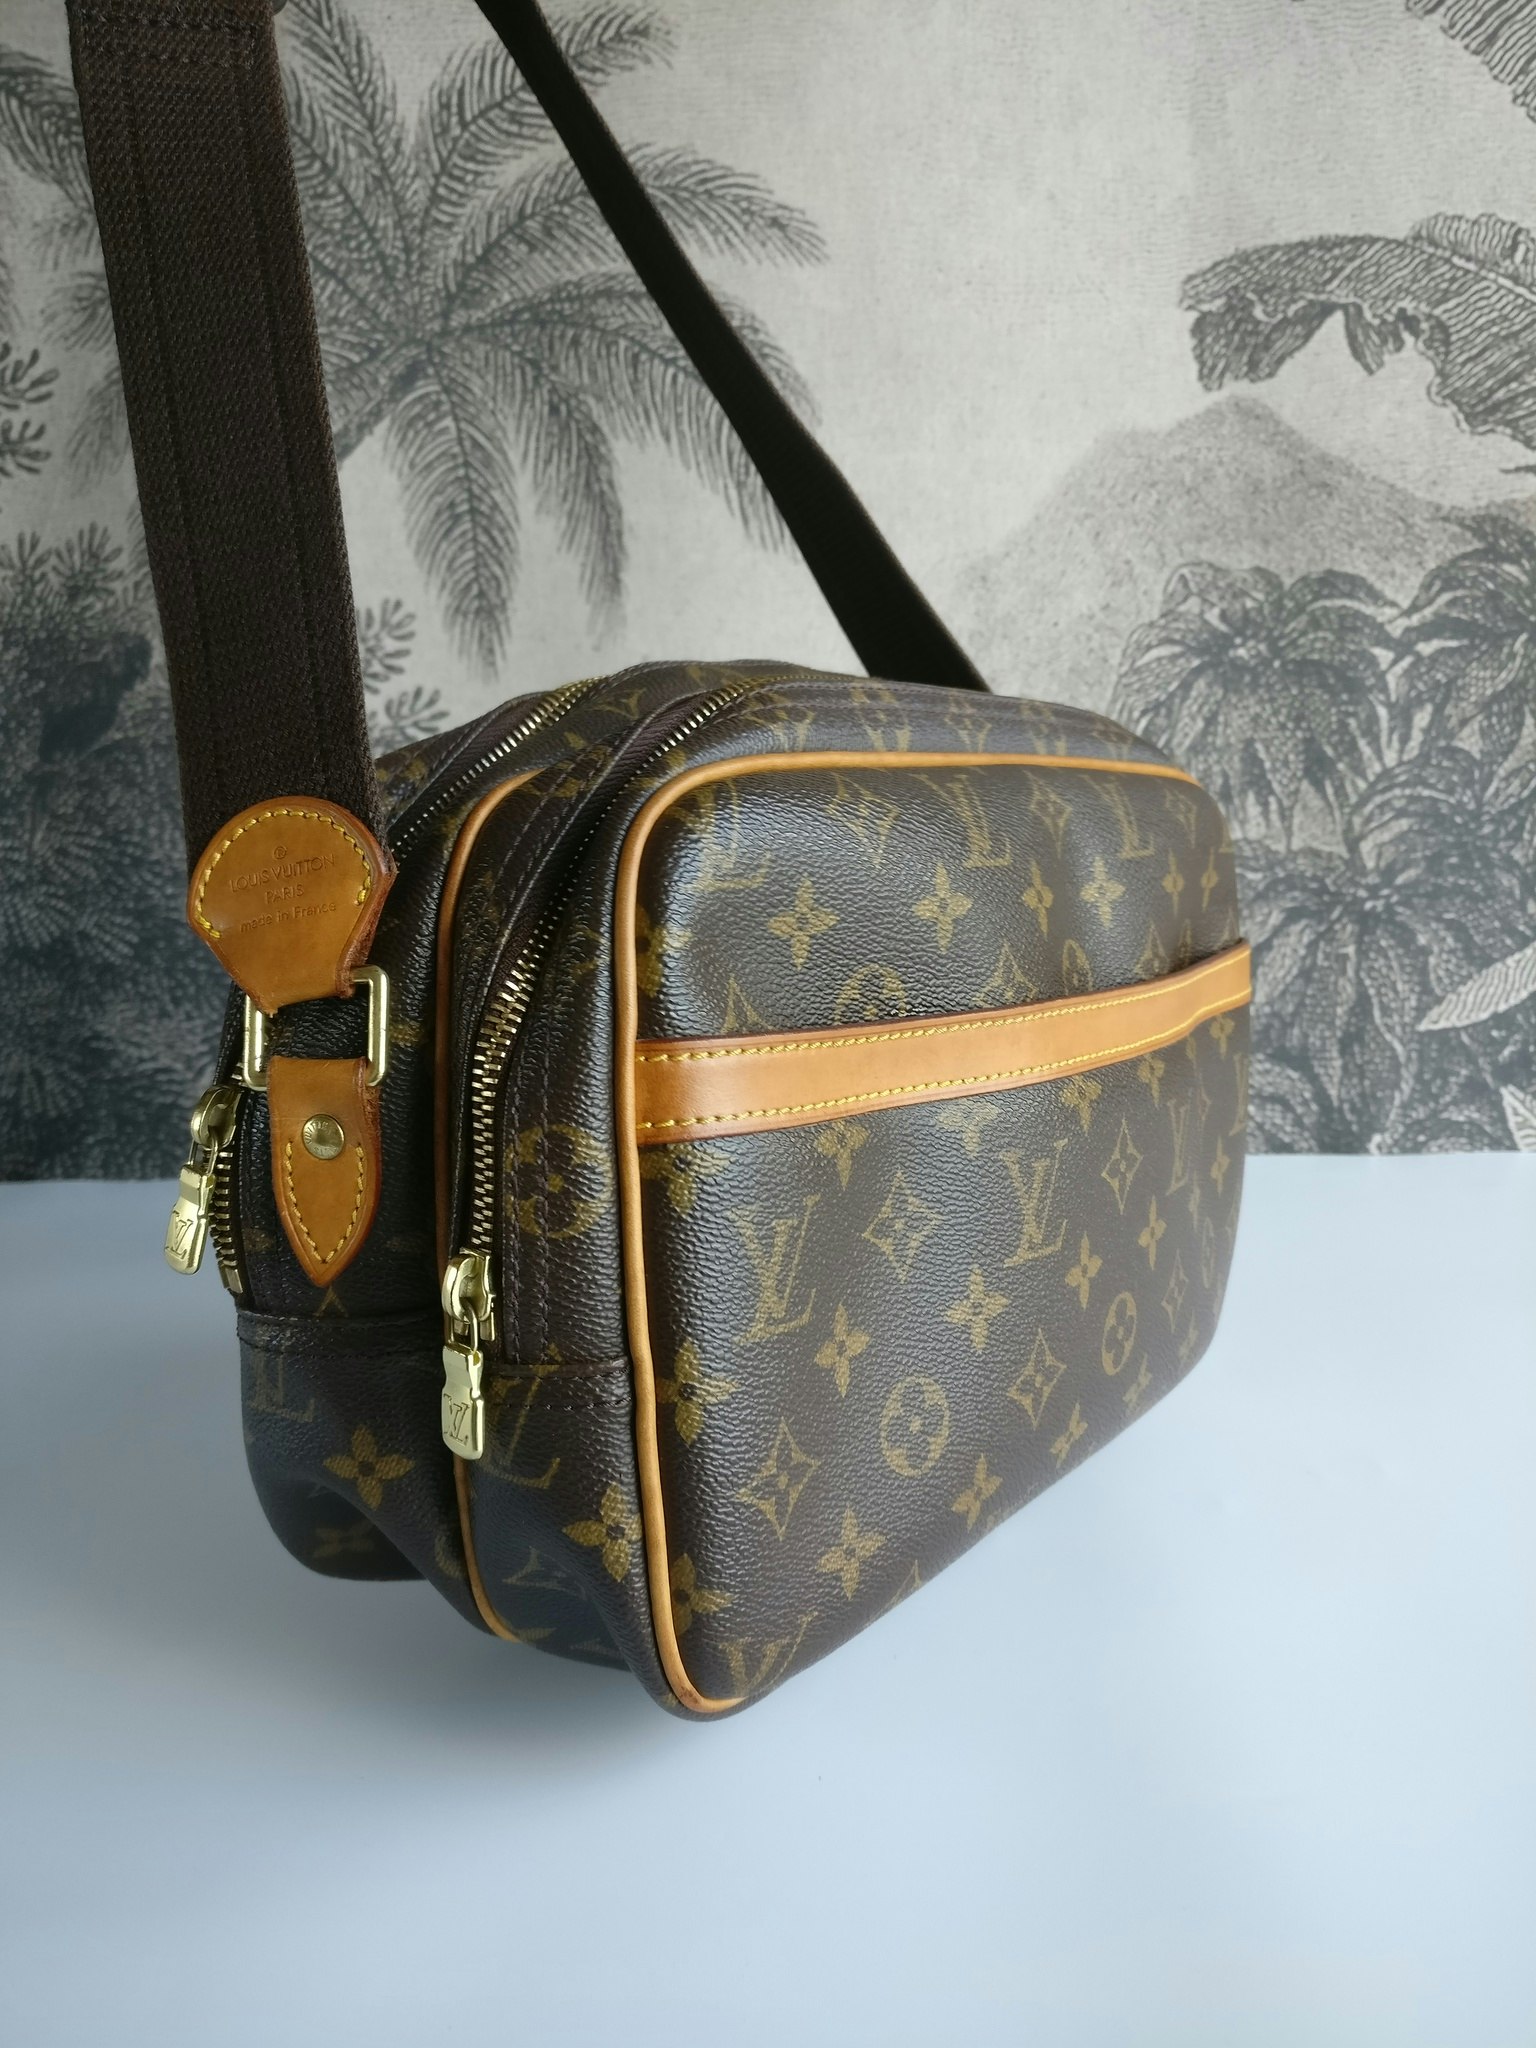 Louis Vuitton Reporter Bag Price